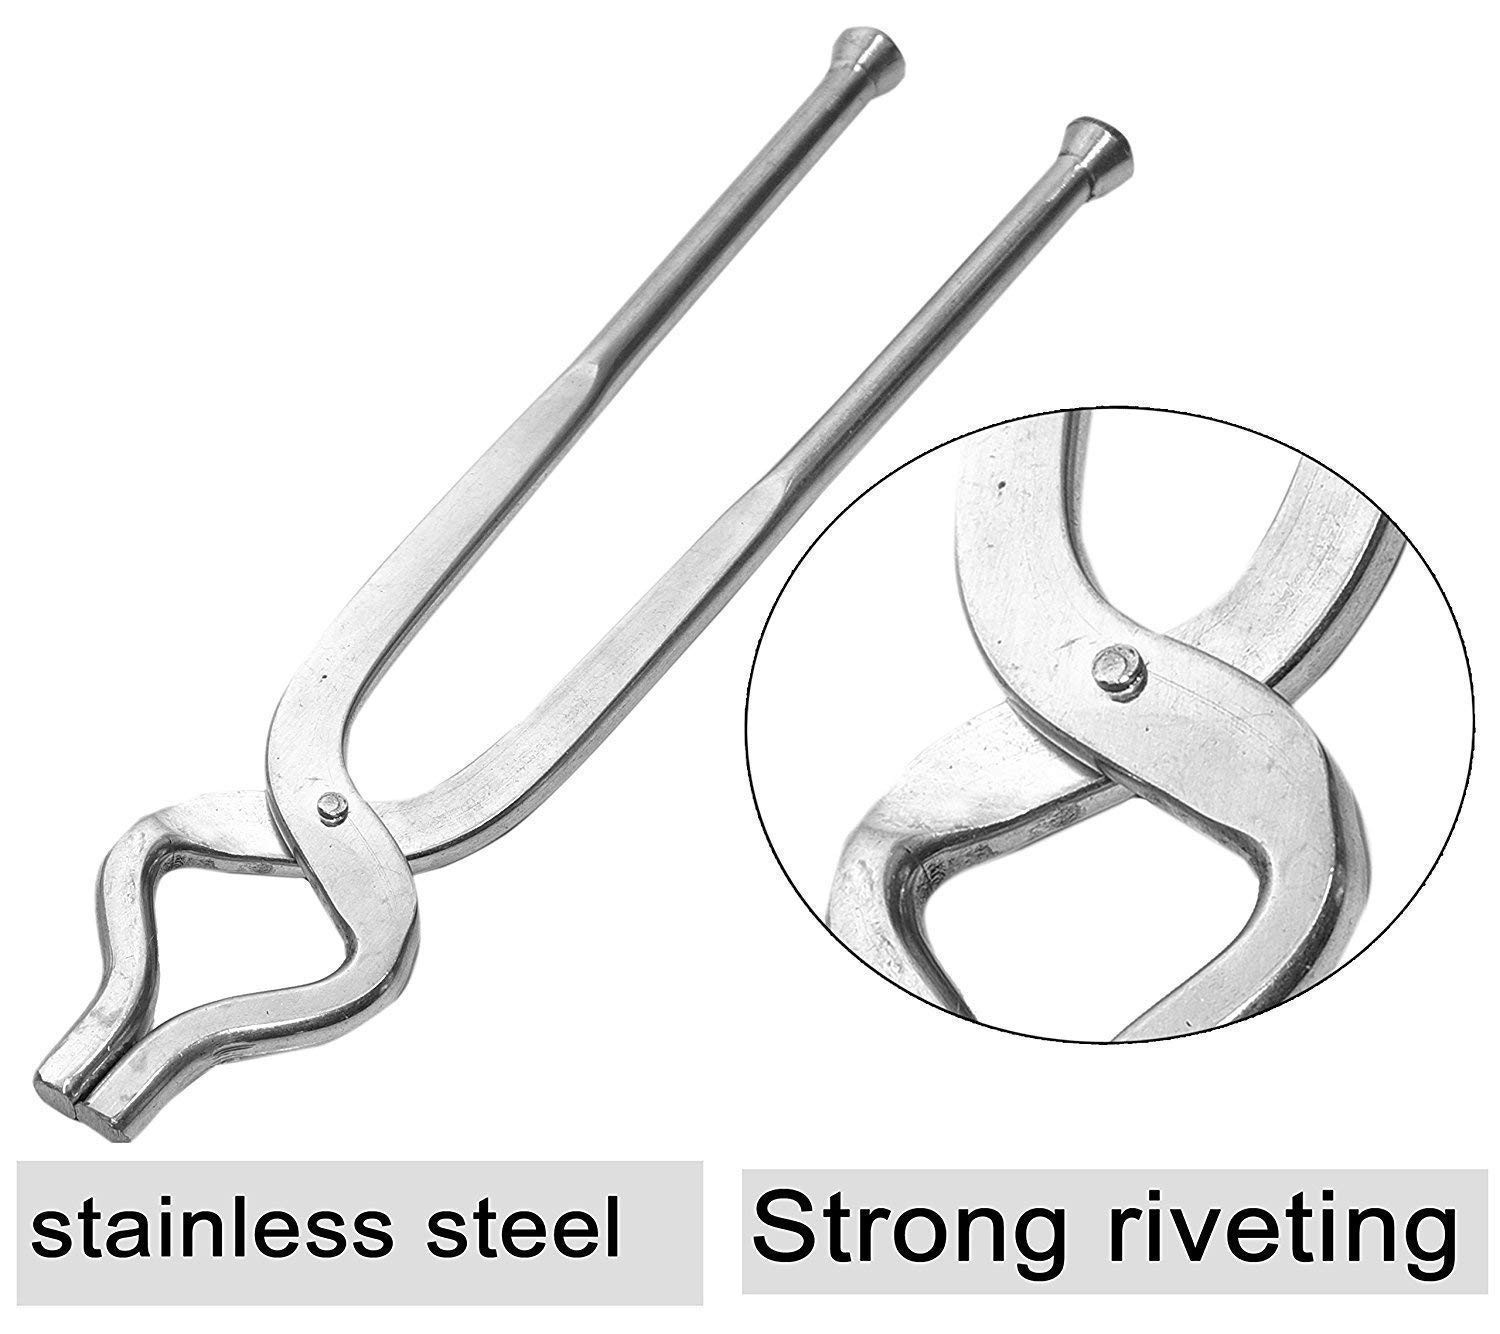 Kuber Industries Stainless Steel Pakkad, Sansi, Tong, Kitchen Tool pincer, Chimta, Utility Holder (Silver)